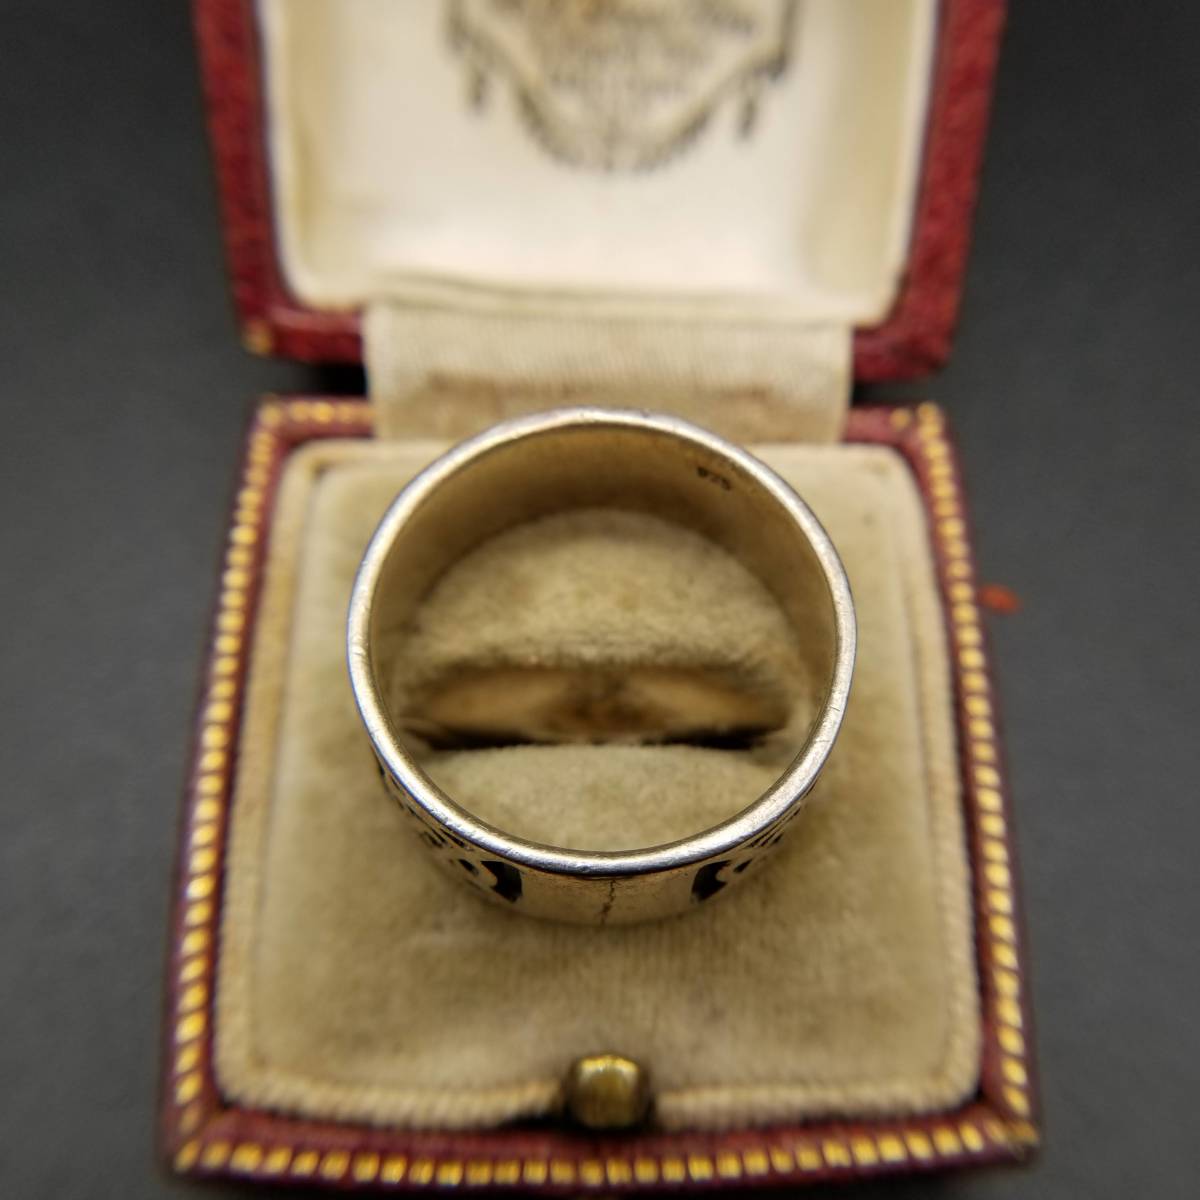  Celt узел Irish стиль 925 серебряный Vintage частота кольцо кольцо серебряный широкий мужской ювелирные изделия присутствие объем A871